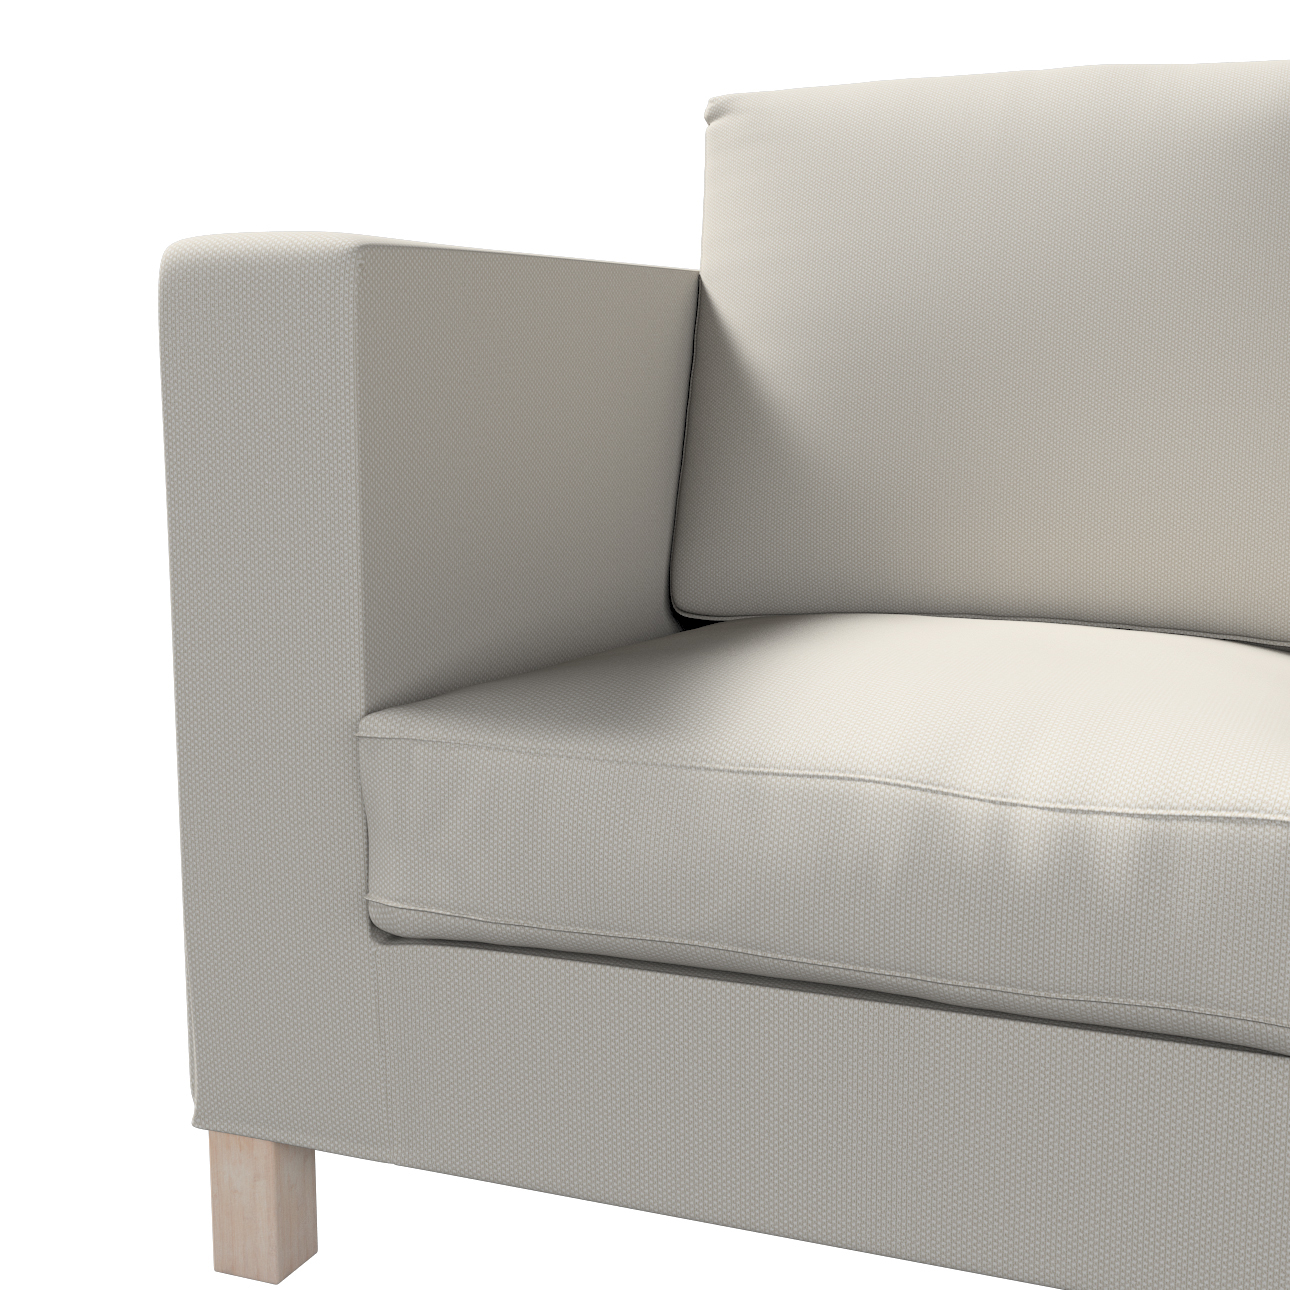 Bezug für Karlanda 3-Sitzer Sofa nicht ausklappbar, kurz, grau, Bezug für K günstig online kaufen